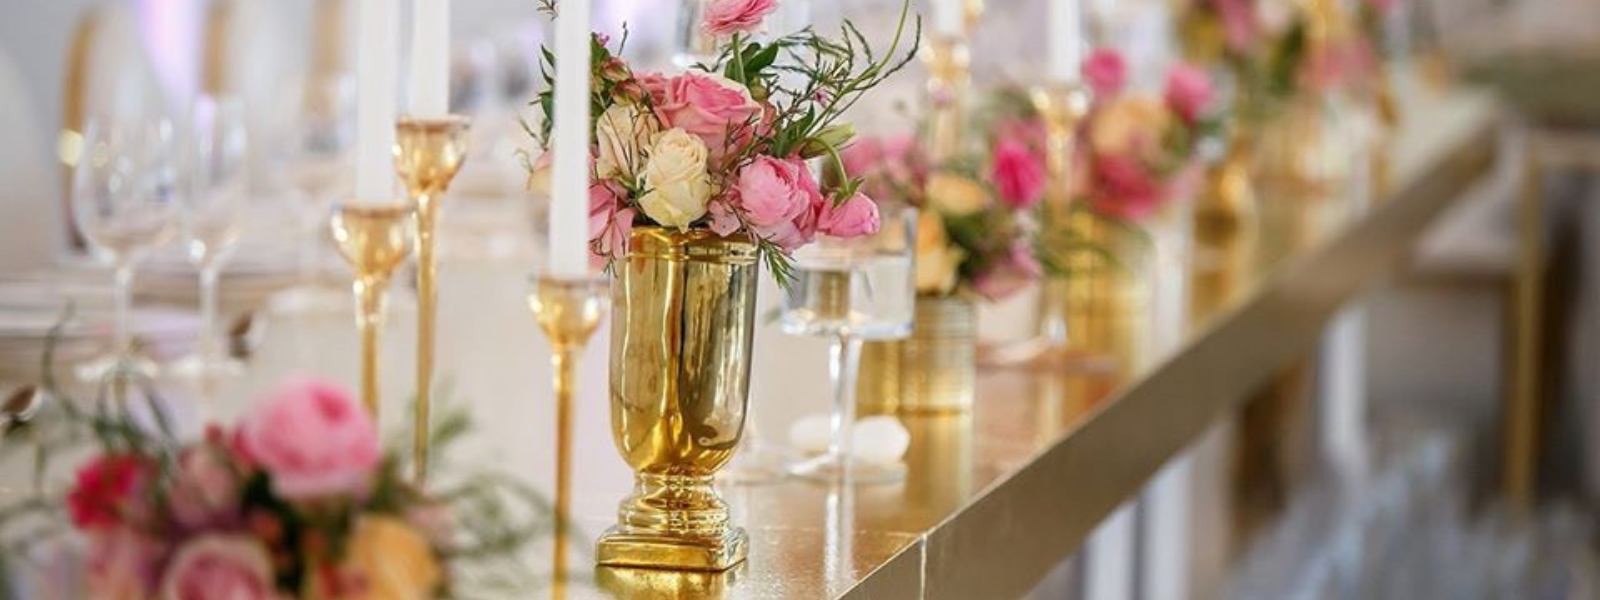 american swiss wedding rings, wedding floral, luxury weddings, wedding venues 